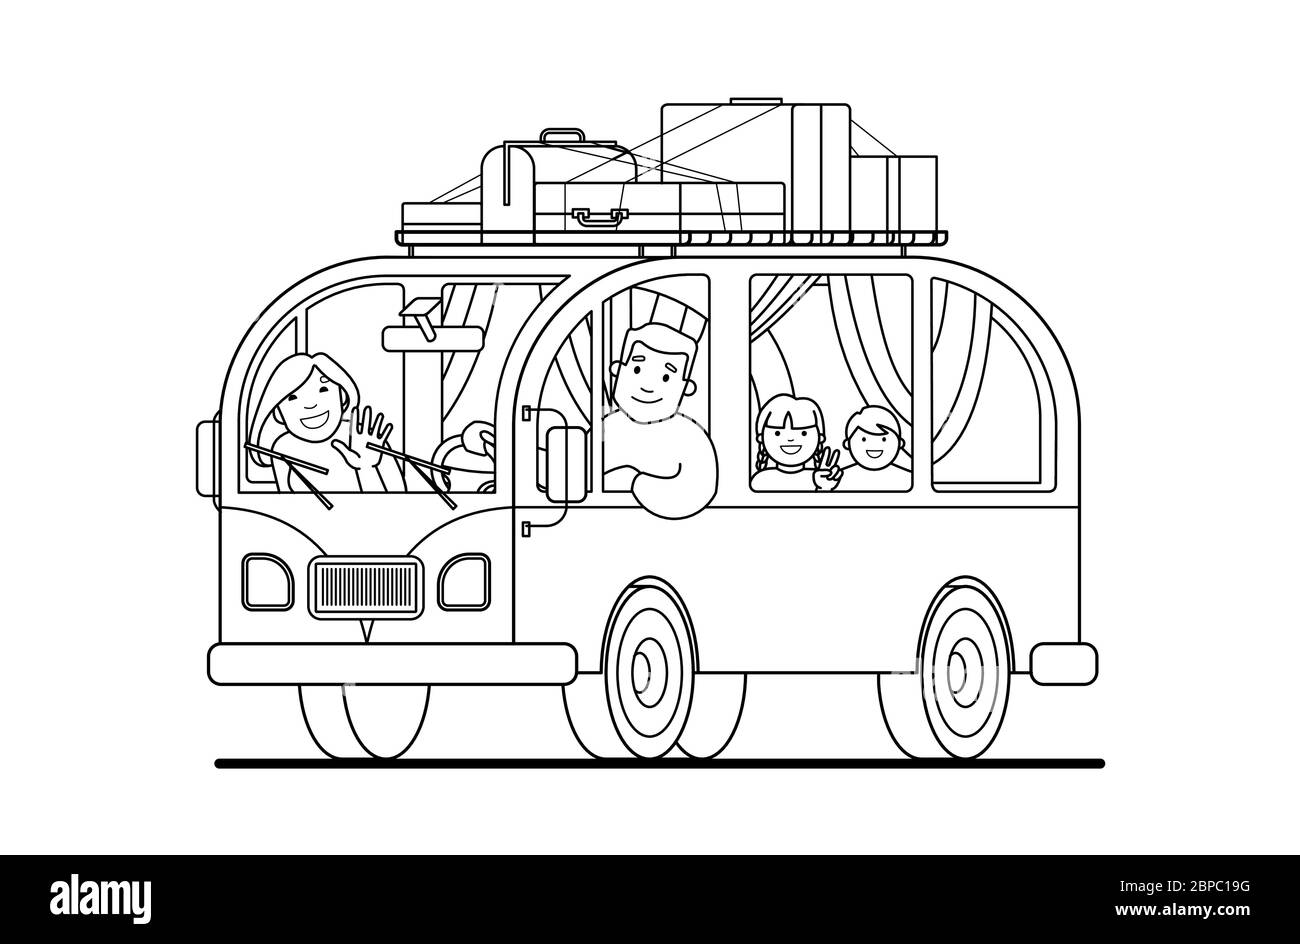 Kontur. Familienausflug mit dem Kleinbus; Vater fährt, Mutter, Kinder; Camping. Glücklich Cartoon Menschen Kinder in einem Retro-Minivan. Roadtrip, Sommerurlaub. Stock Vektor